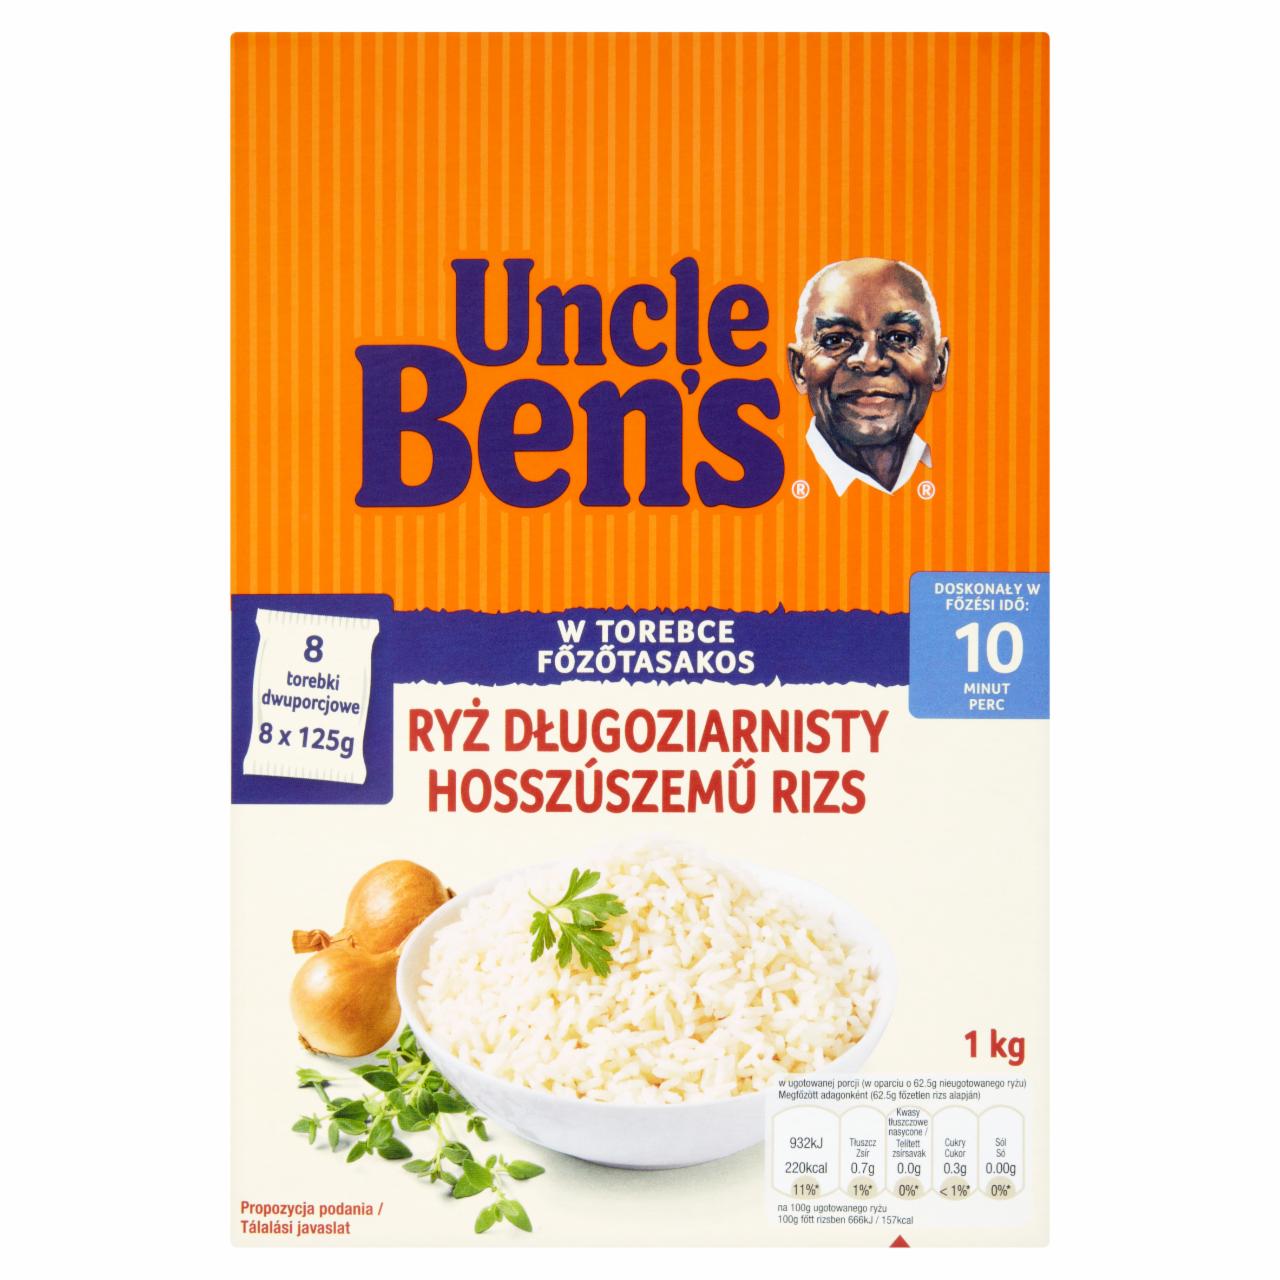 Képek - Uncle Ben's főzőtasakos hosszúszemű rizs 1 kg